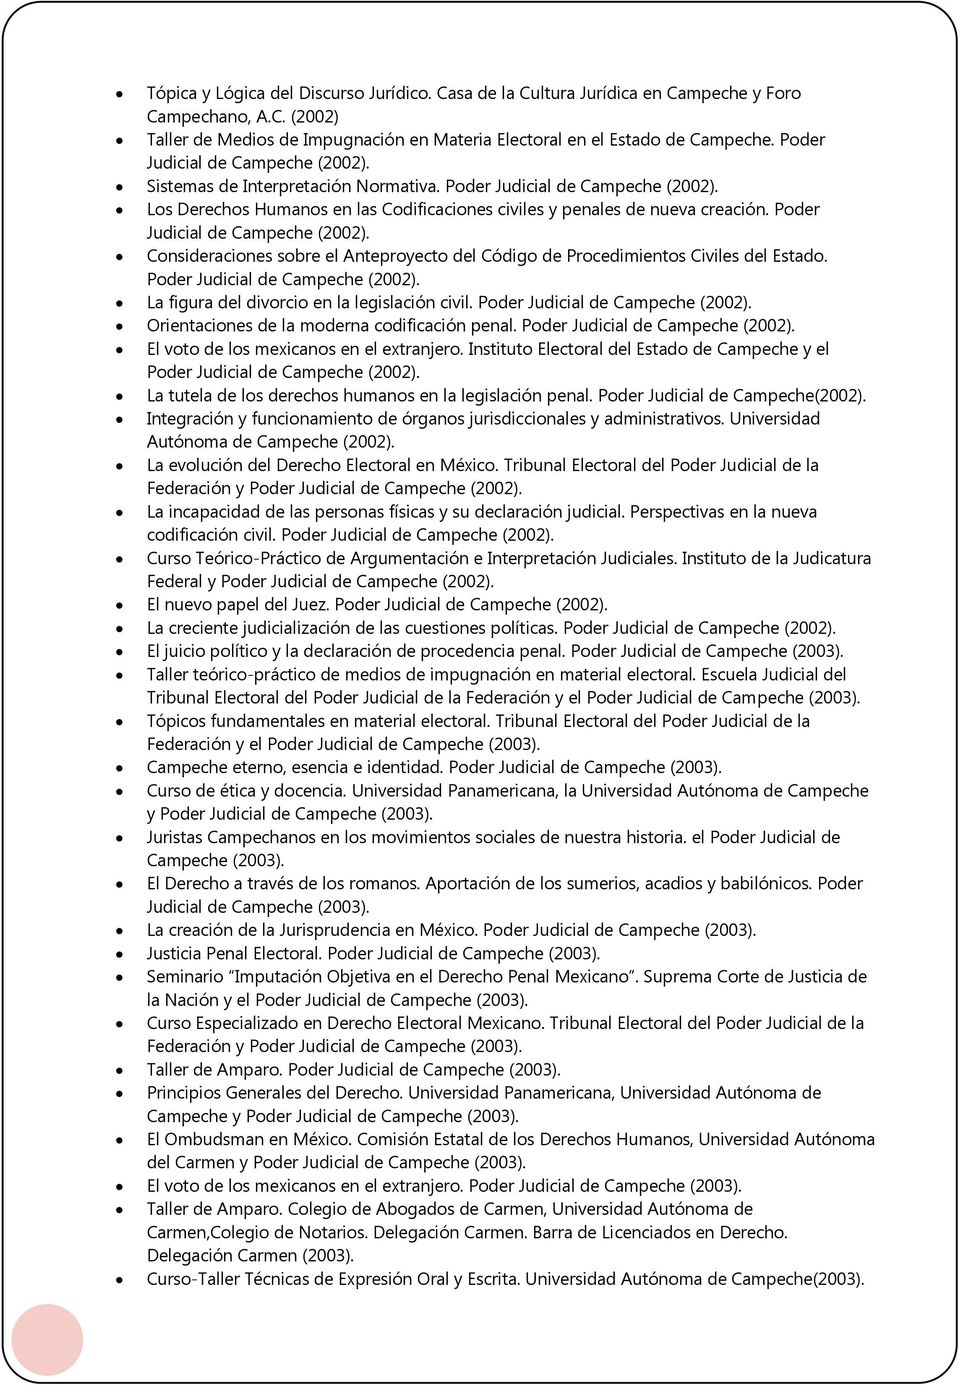 Poder Judicial de Campeche (2002). Consideraciones sobre el Anteproyecto del Código de Procedimientos Civiles del Estado. Poder Judicial de Campeche (2002).